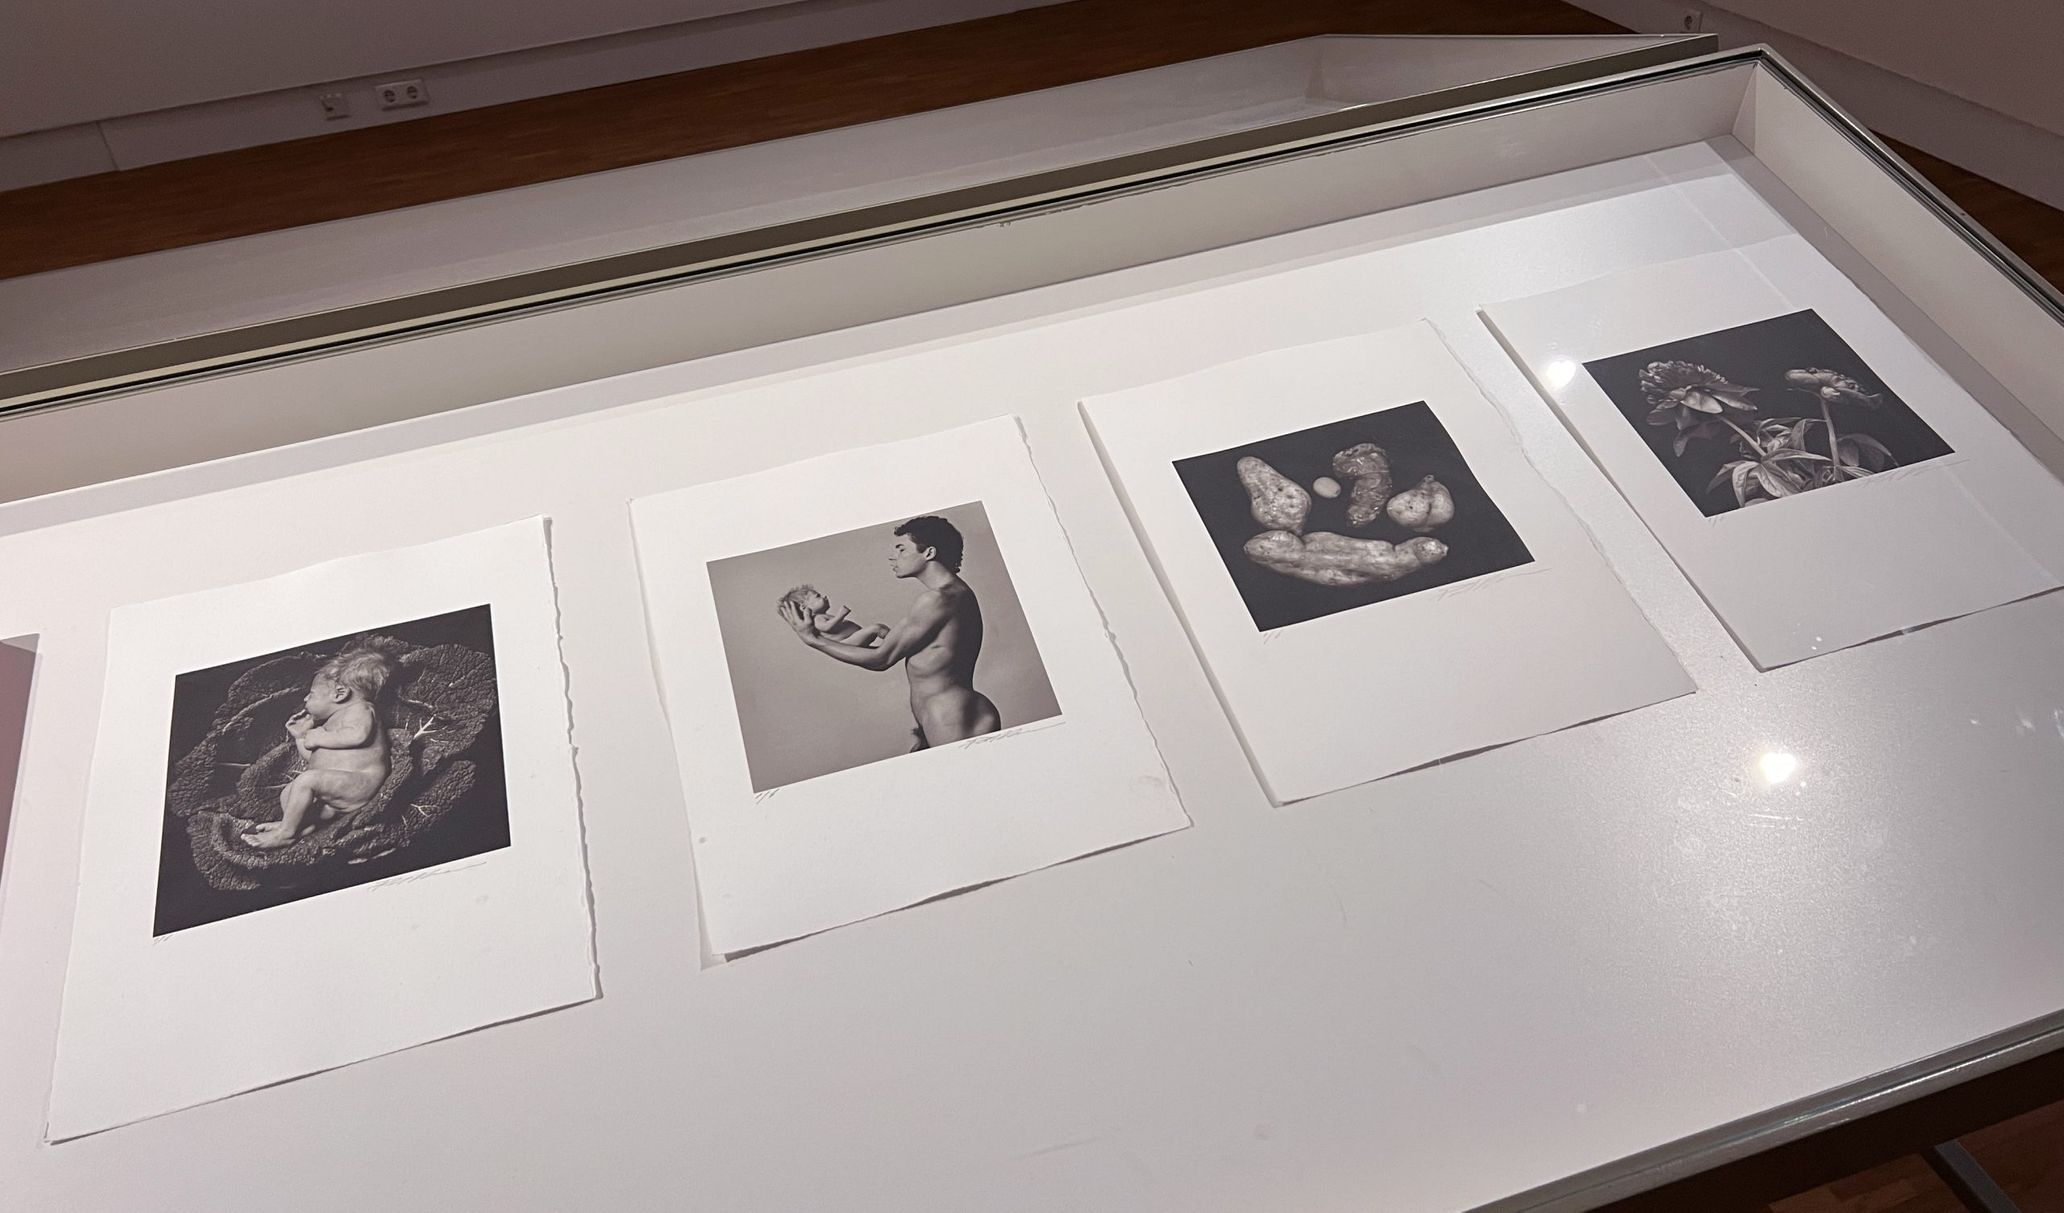 ブランカは亡くなる直前の2021年、オランダを代表する肖像写真家コース・ブリューケルとコラボレーションをし、代表作12点のプラチナパラジウムプリント群を制作した。これらがブランカの再評価につながると期待されている